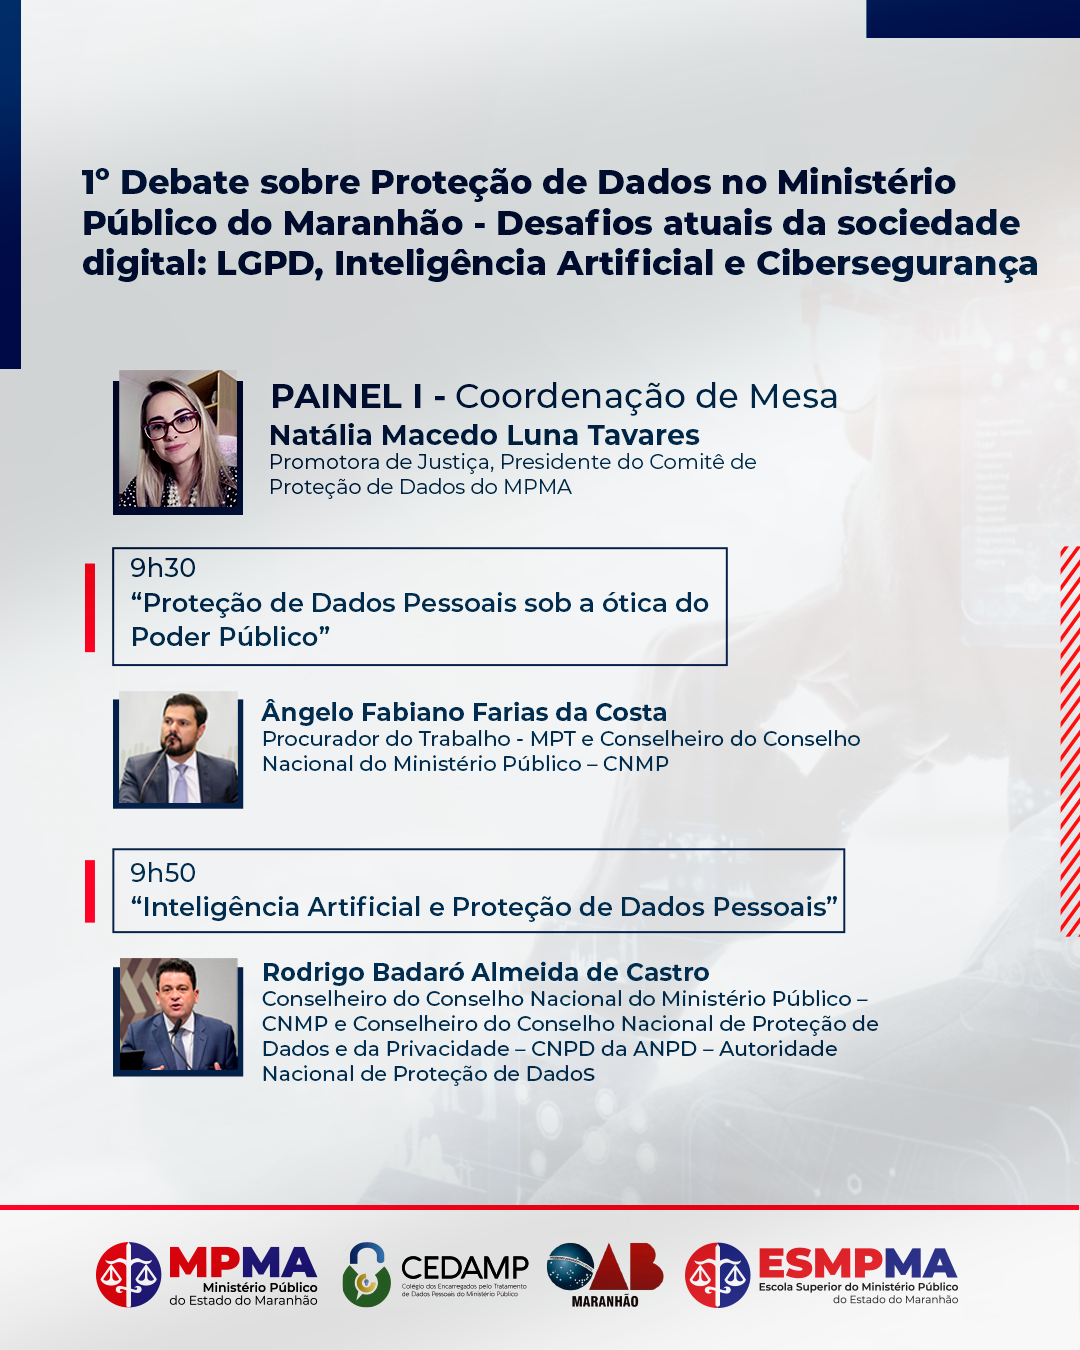 1º Debate sobre Proteção de Dados no Ministério Público do Maranhão - Desafios atuais da sociedade digital: LGPD, Inteligência Artificial e Cibersegurança